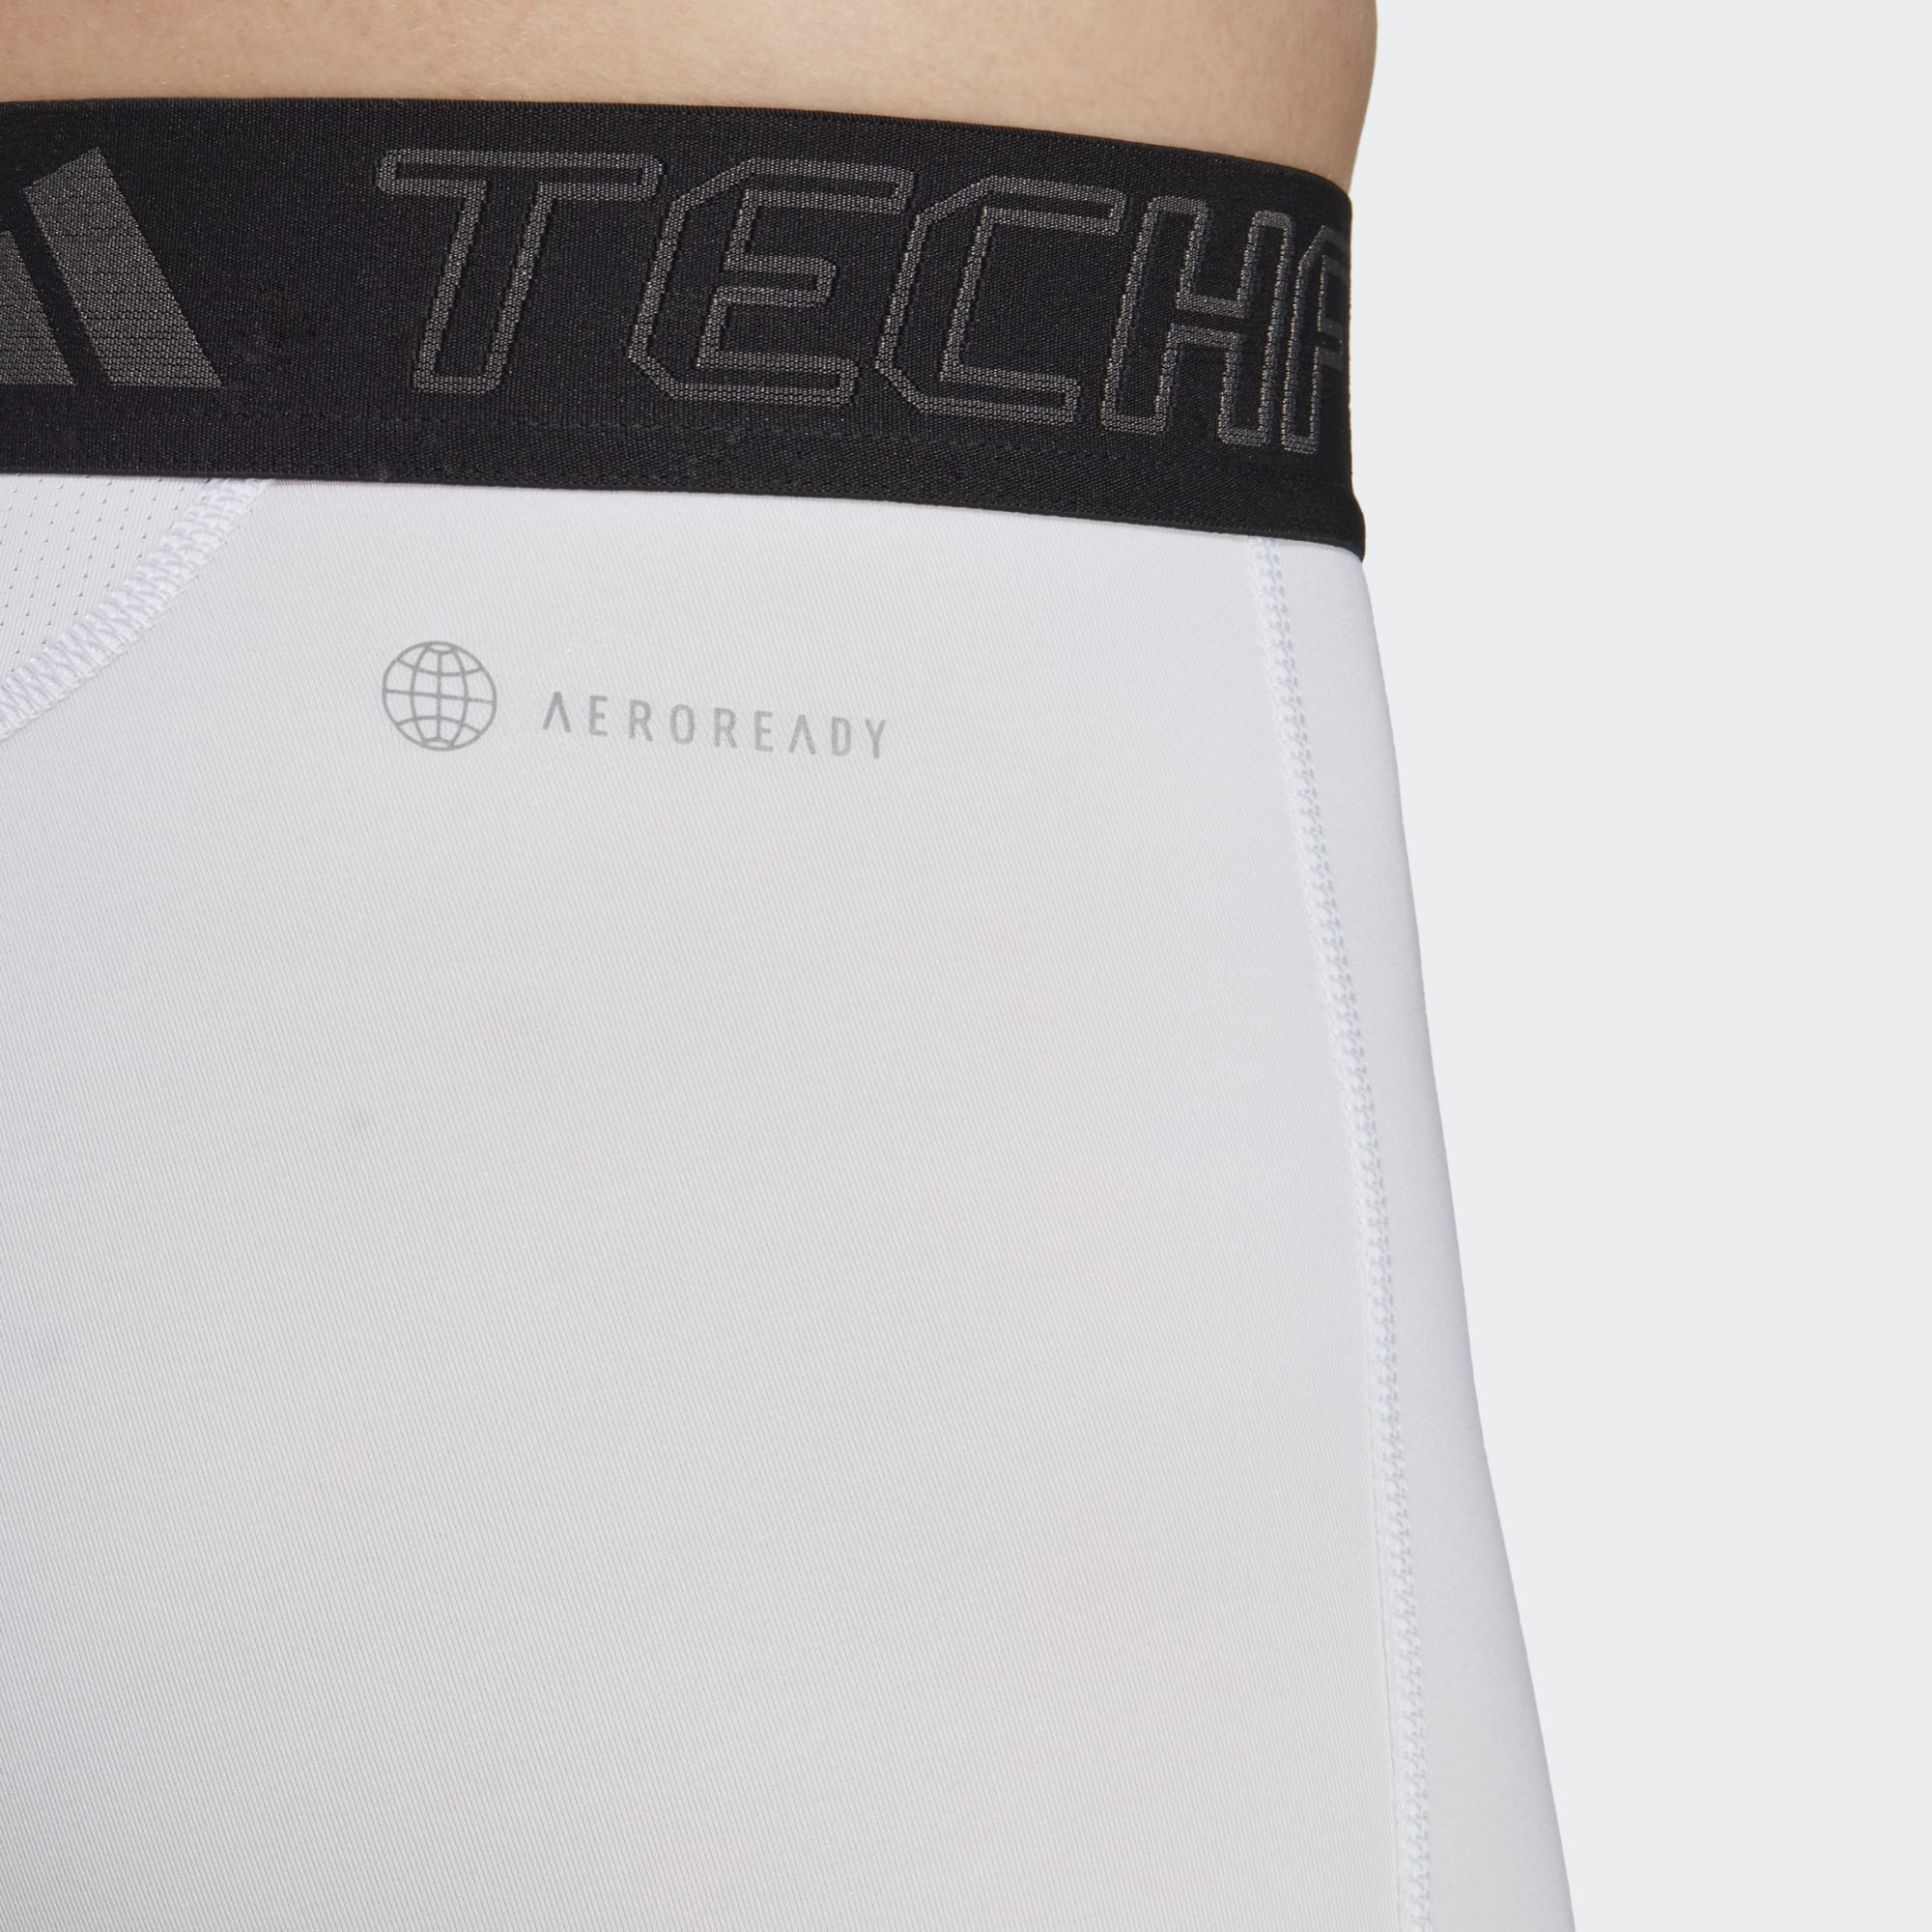 Adidas Techfit Men's Base Shorts Tights